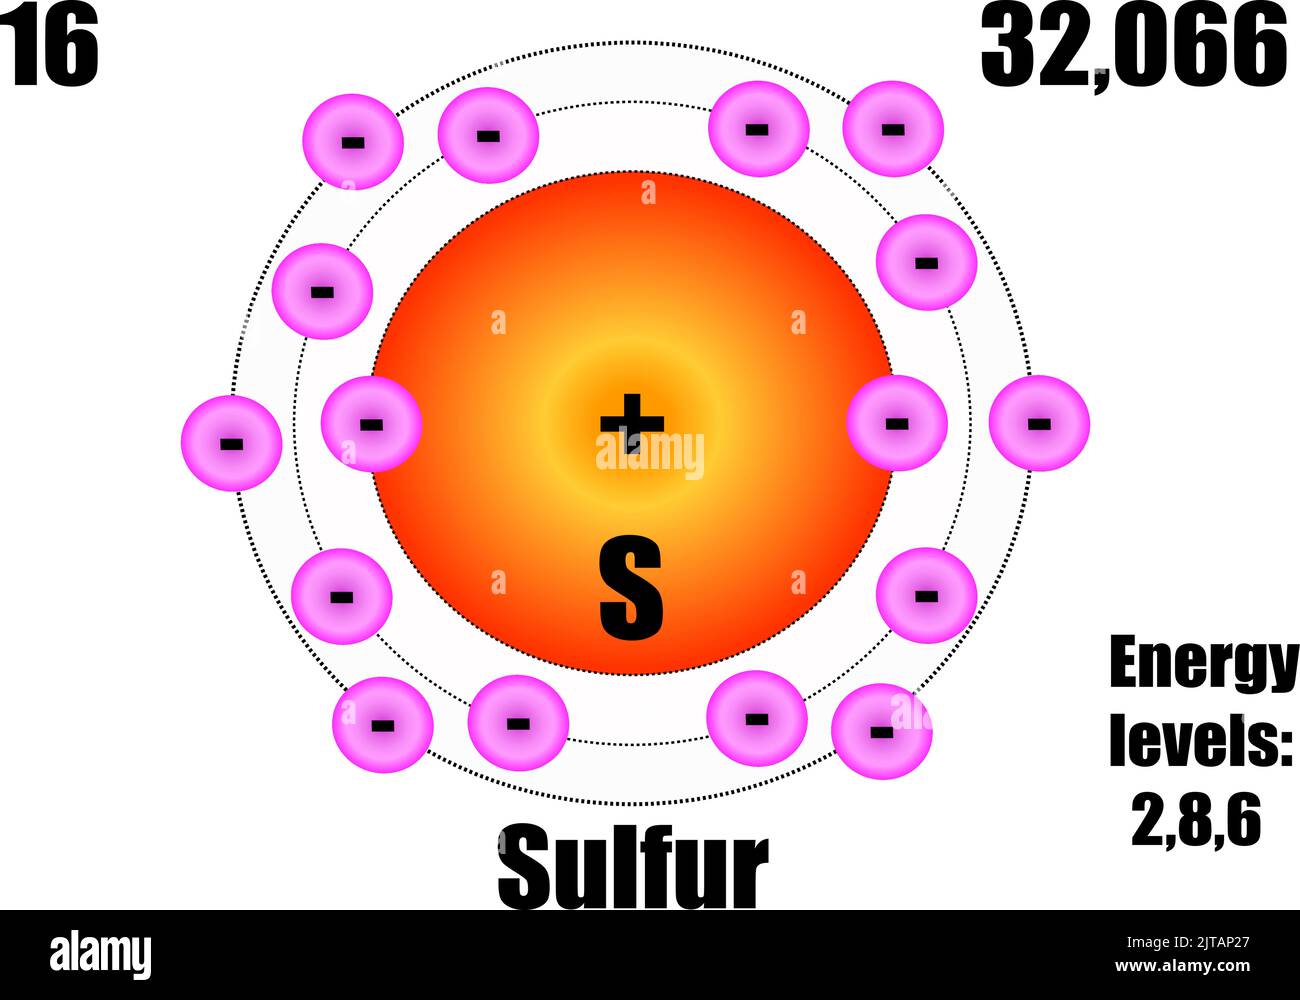 Atome de soufre, avec masse et niveaux d'énergie. Illustration vectorielle Illustration de Vecteur